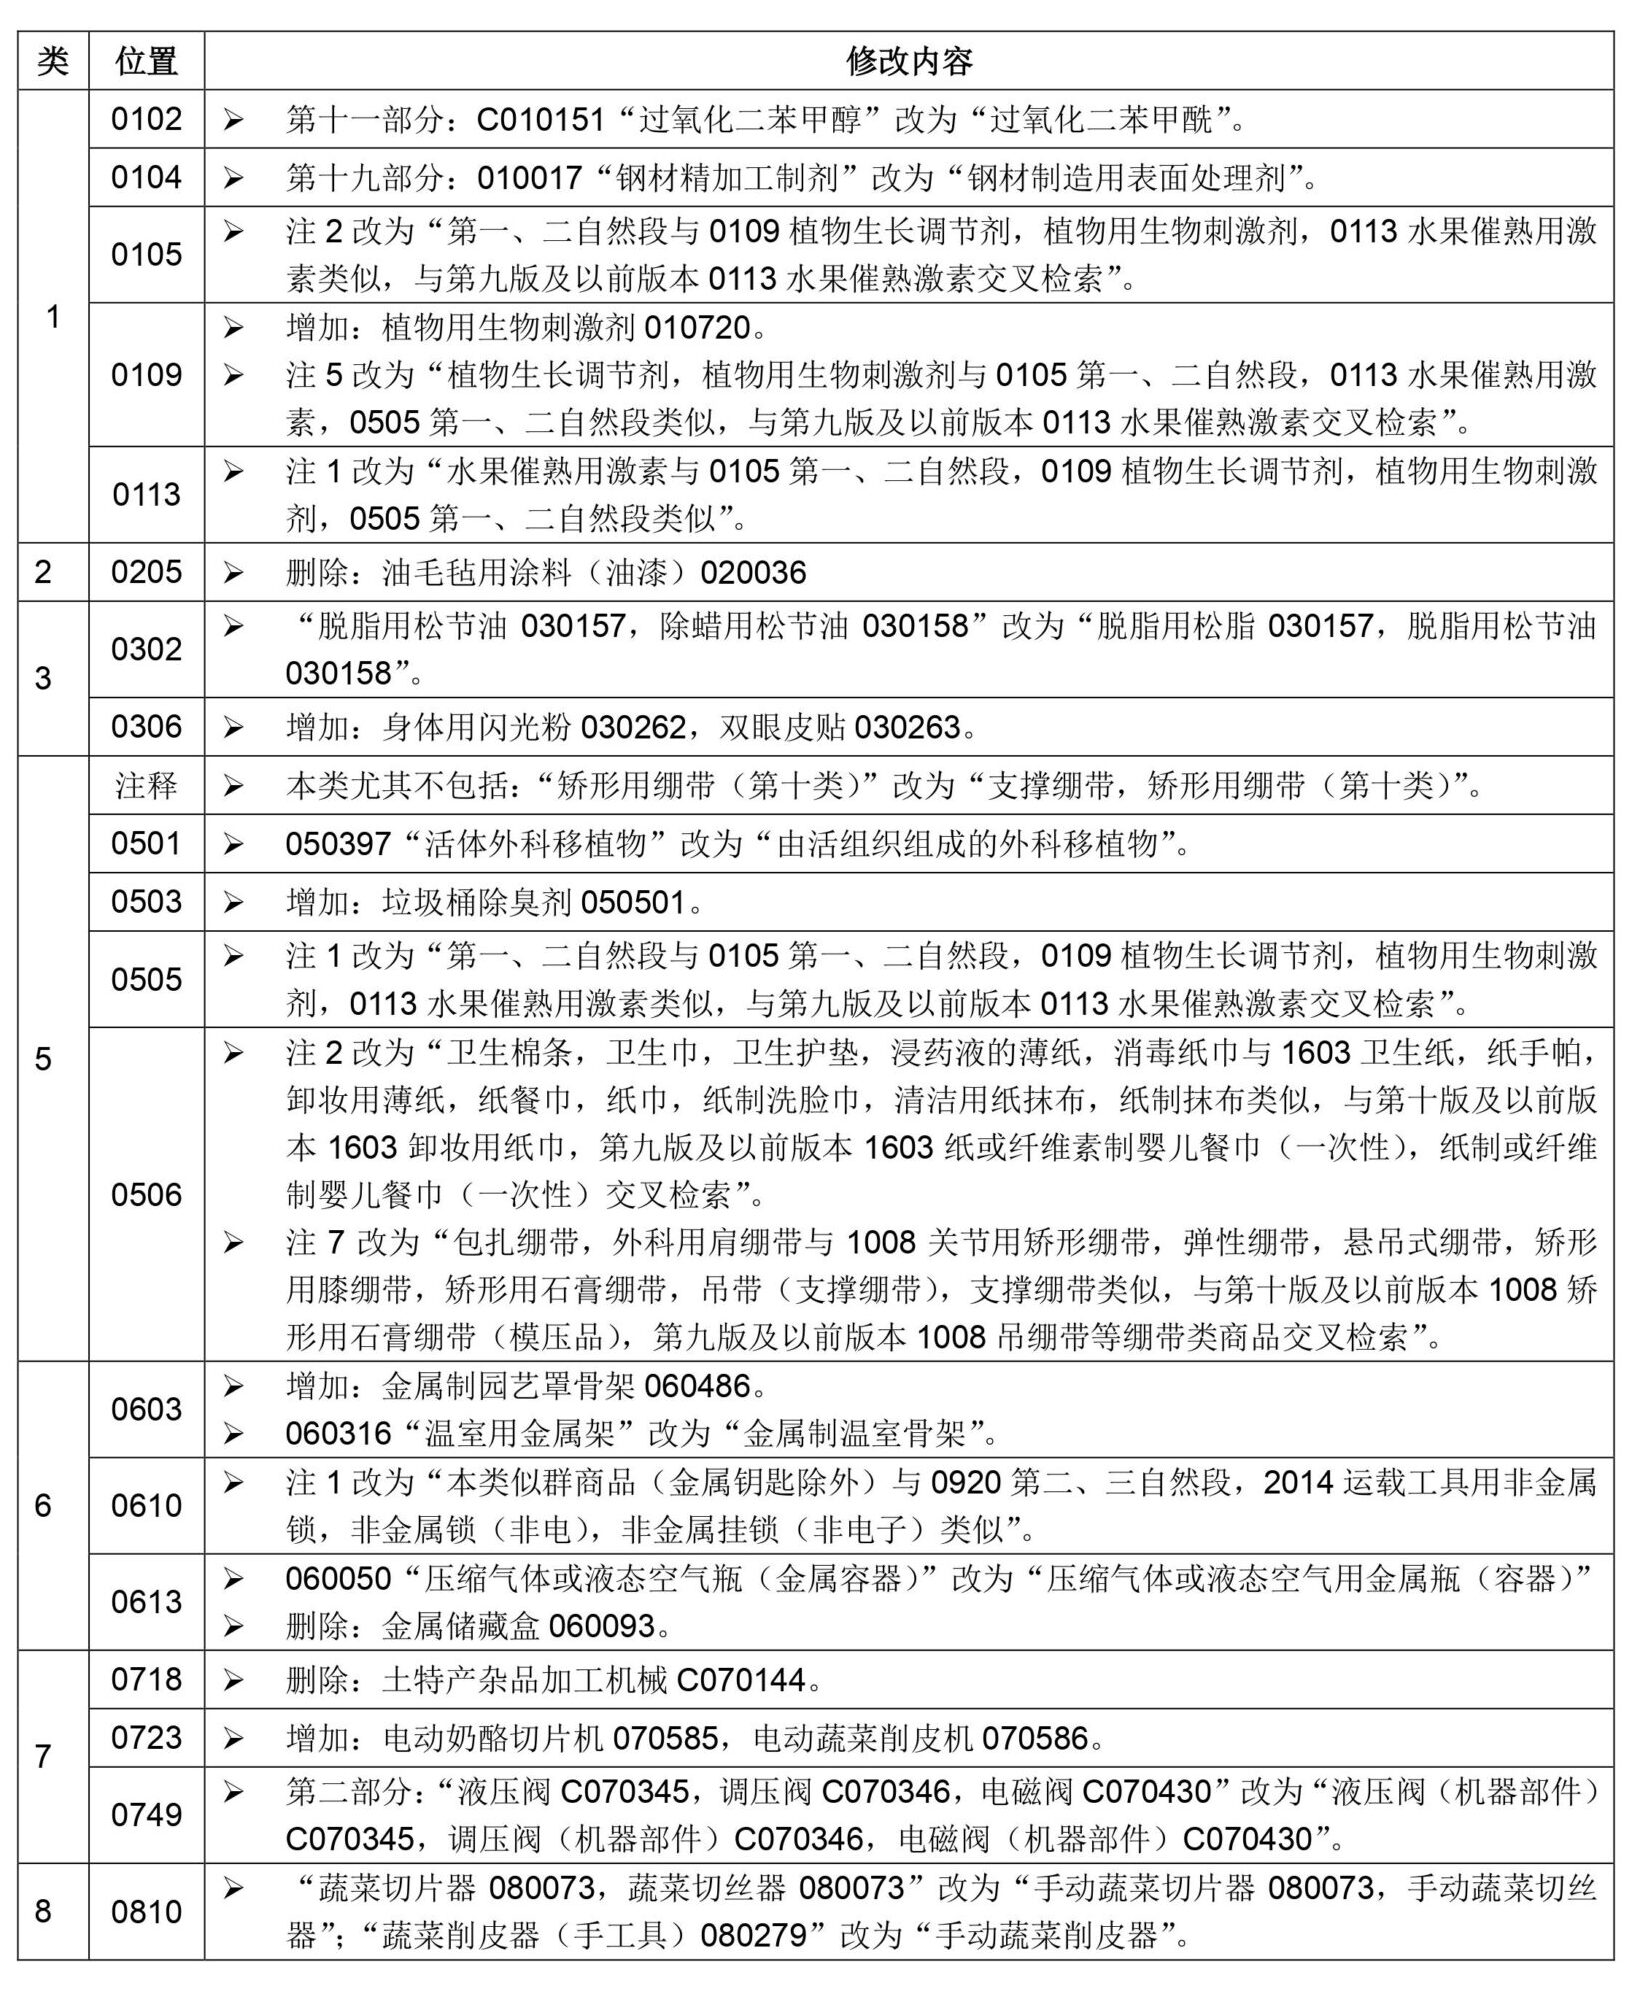 尼斯分类第十一版2021文本中文版和区分表修改内容